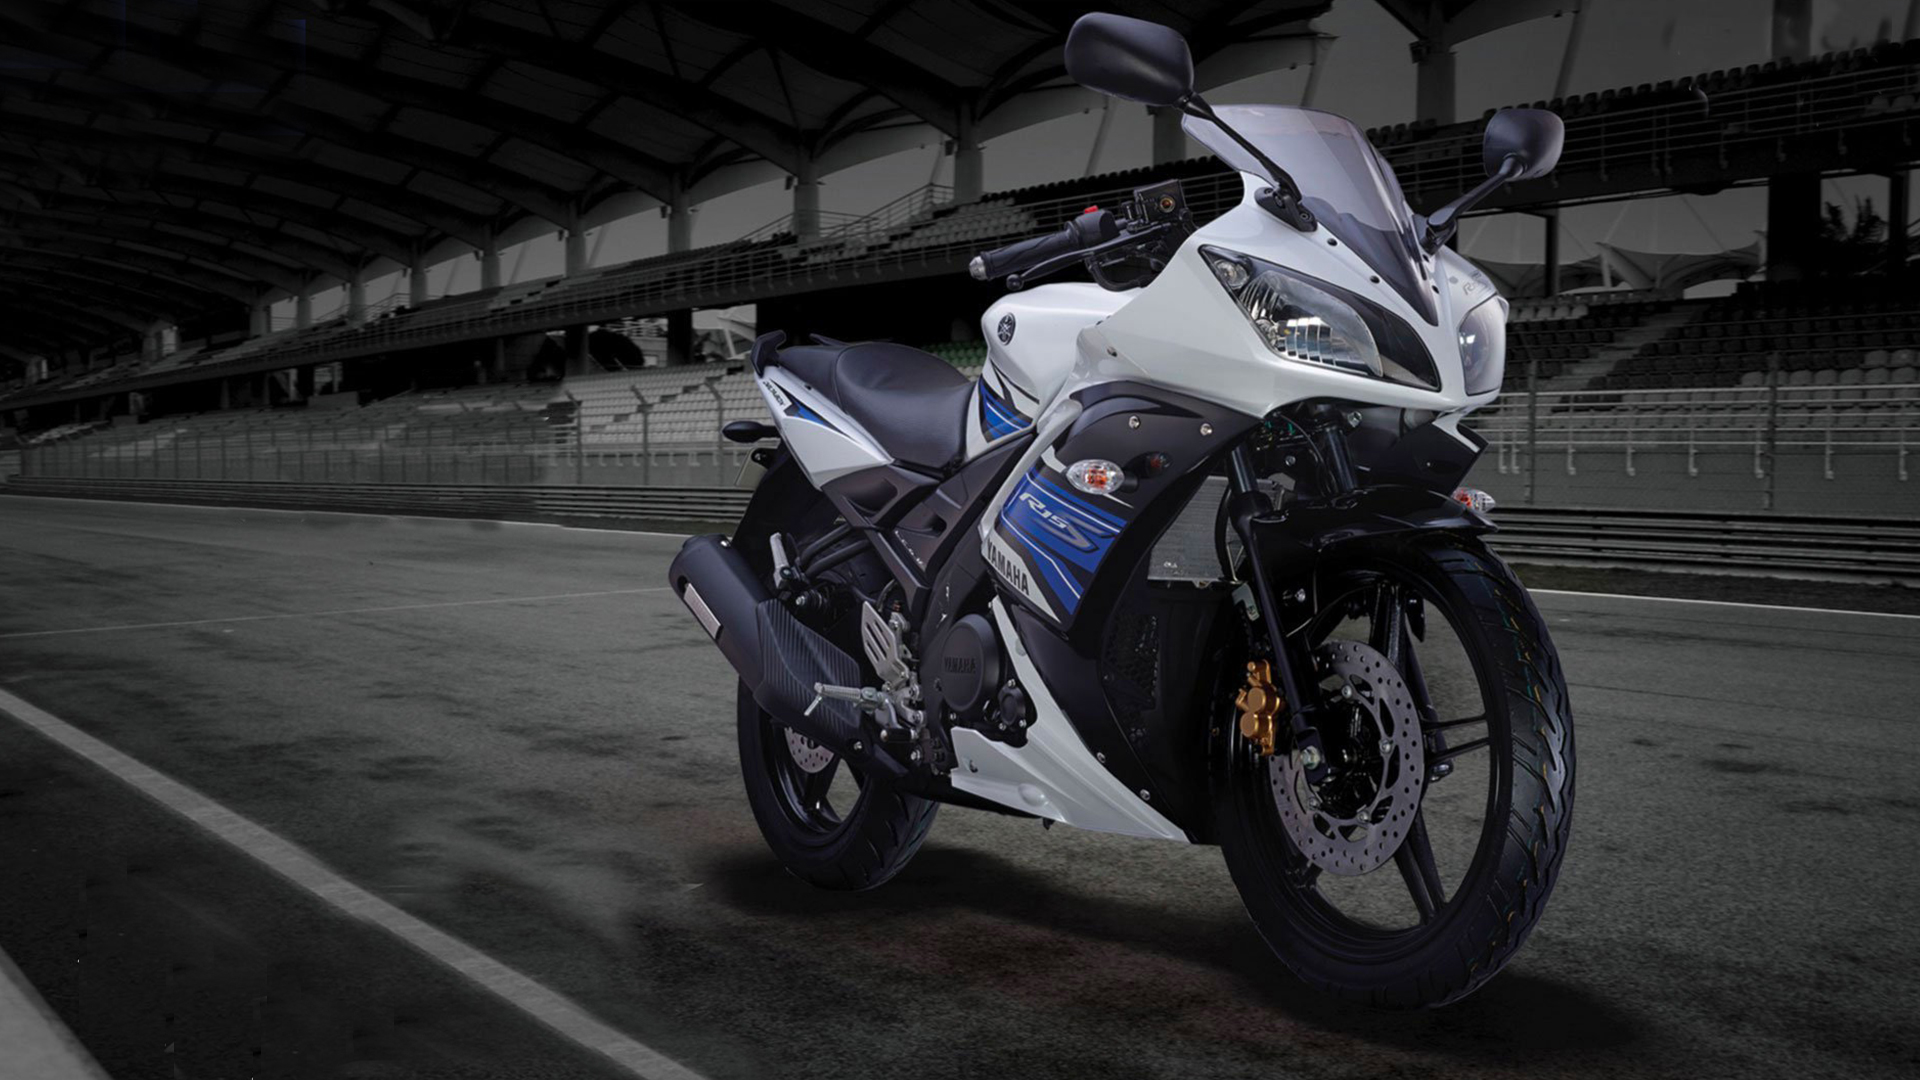 Yamaha YZF-R15 S 2015 STD Bike Photos - Overdrive